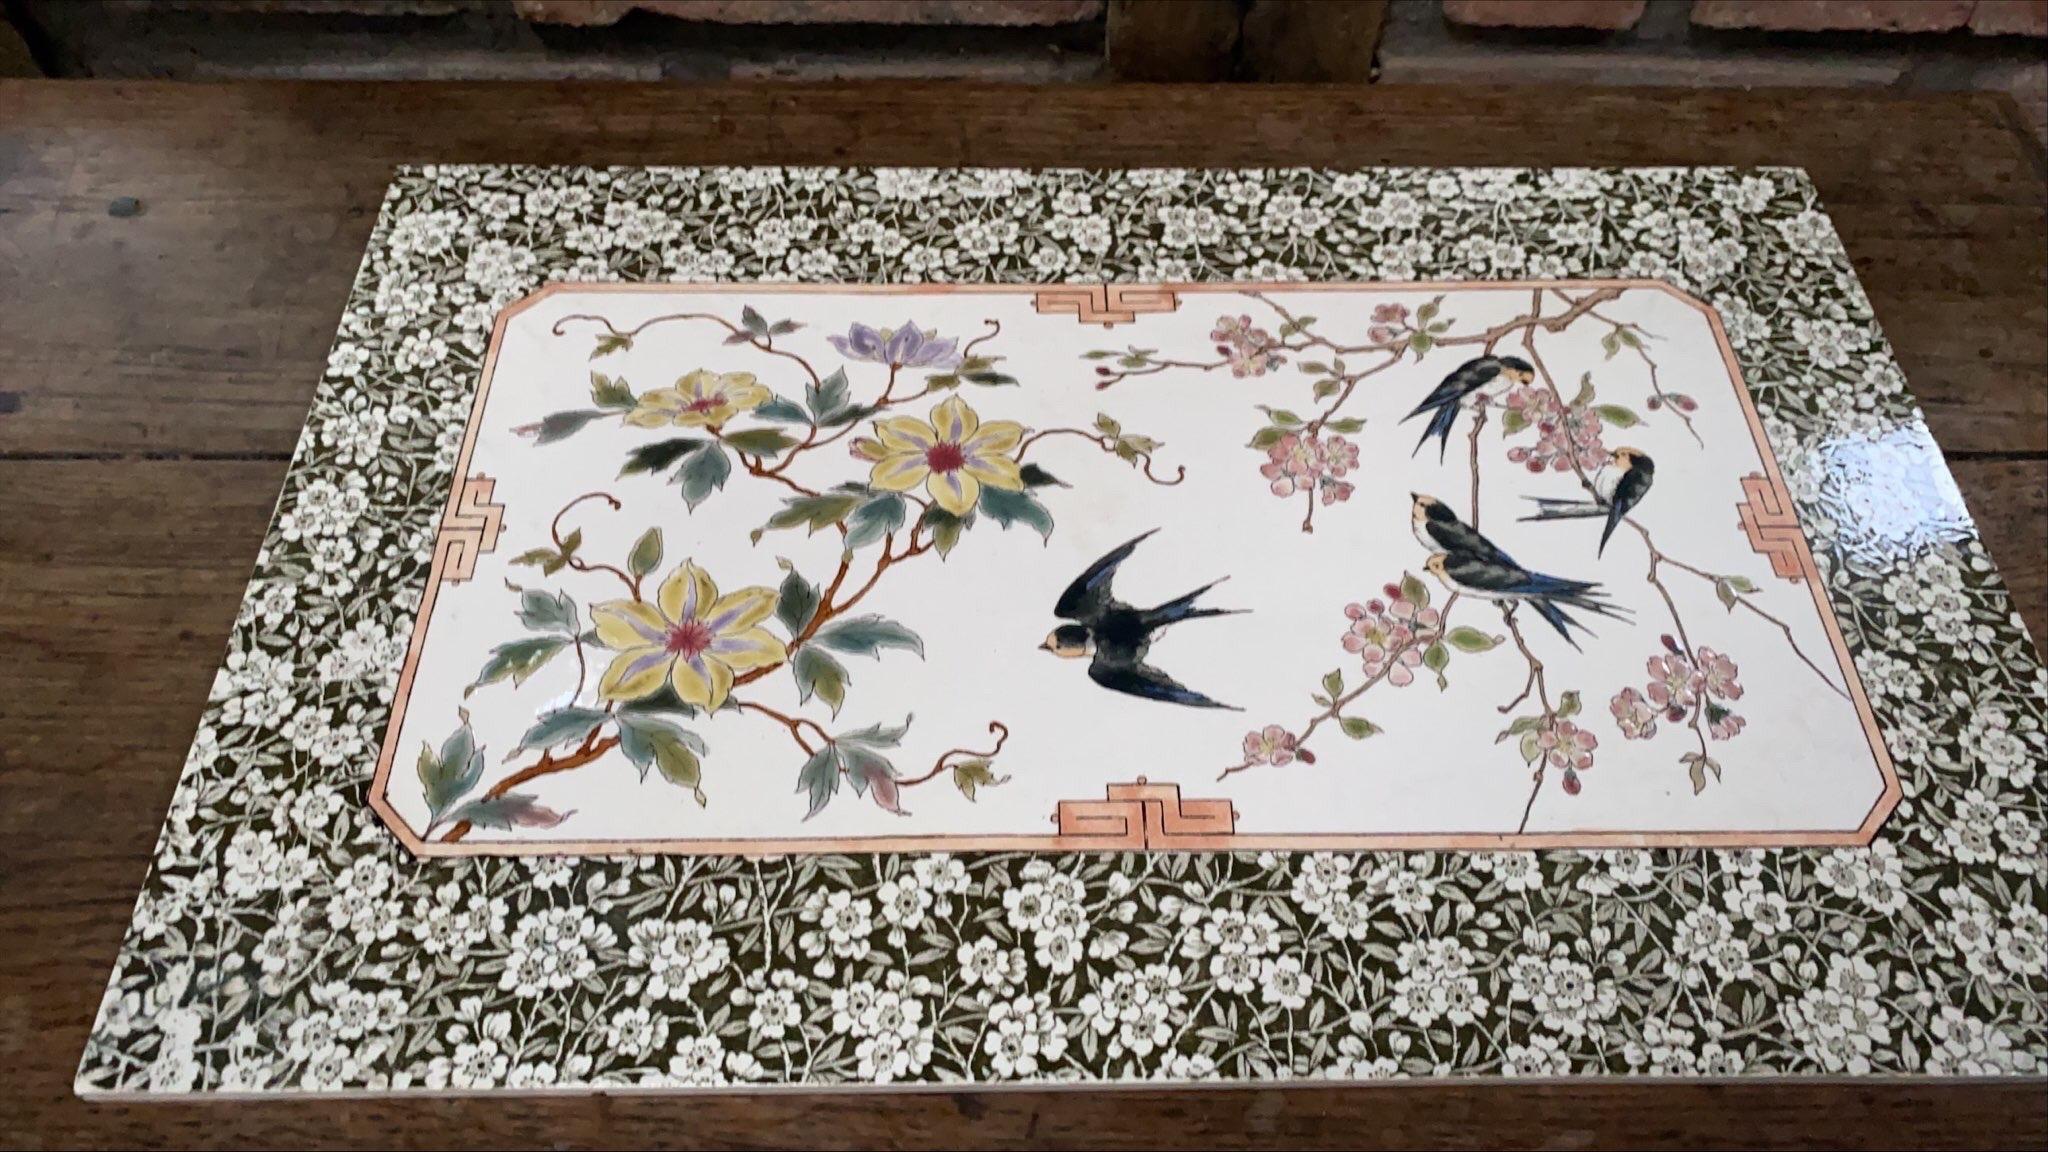 Grande plaque en céramique du 19e siècle avec des oiseaux et des fleurs.
Période japonaise.
Possiblement Sarreguemines non signé.